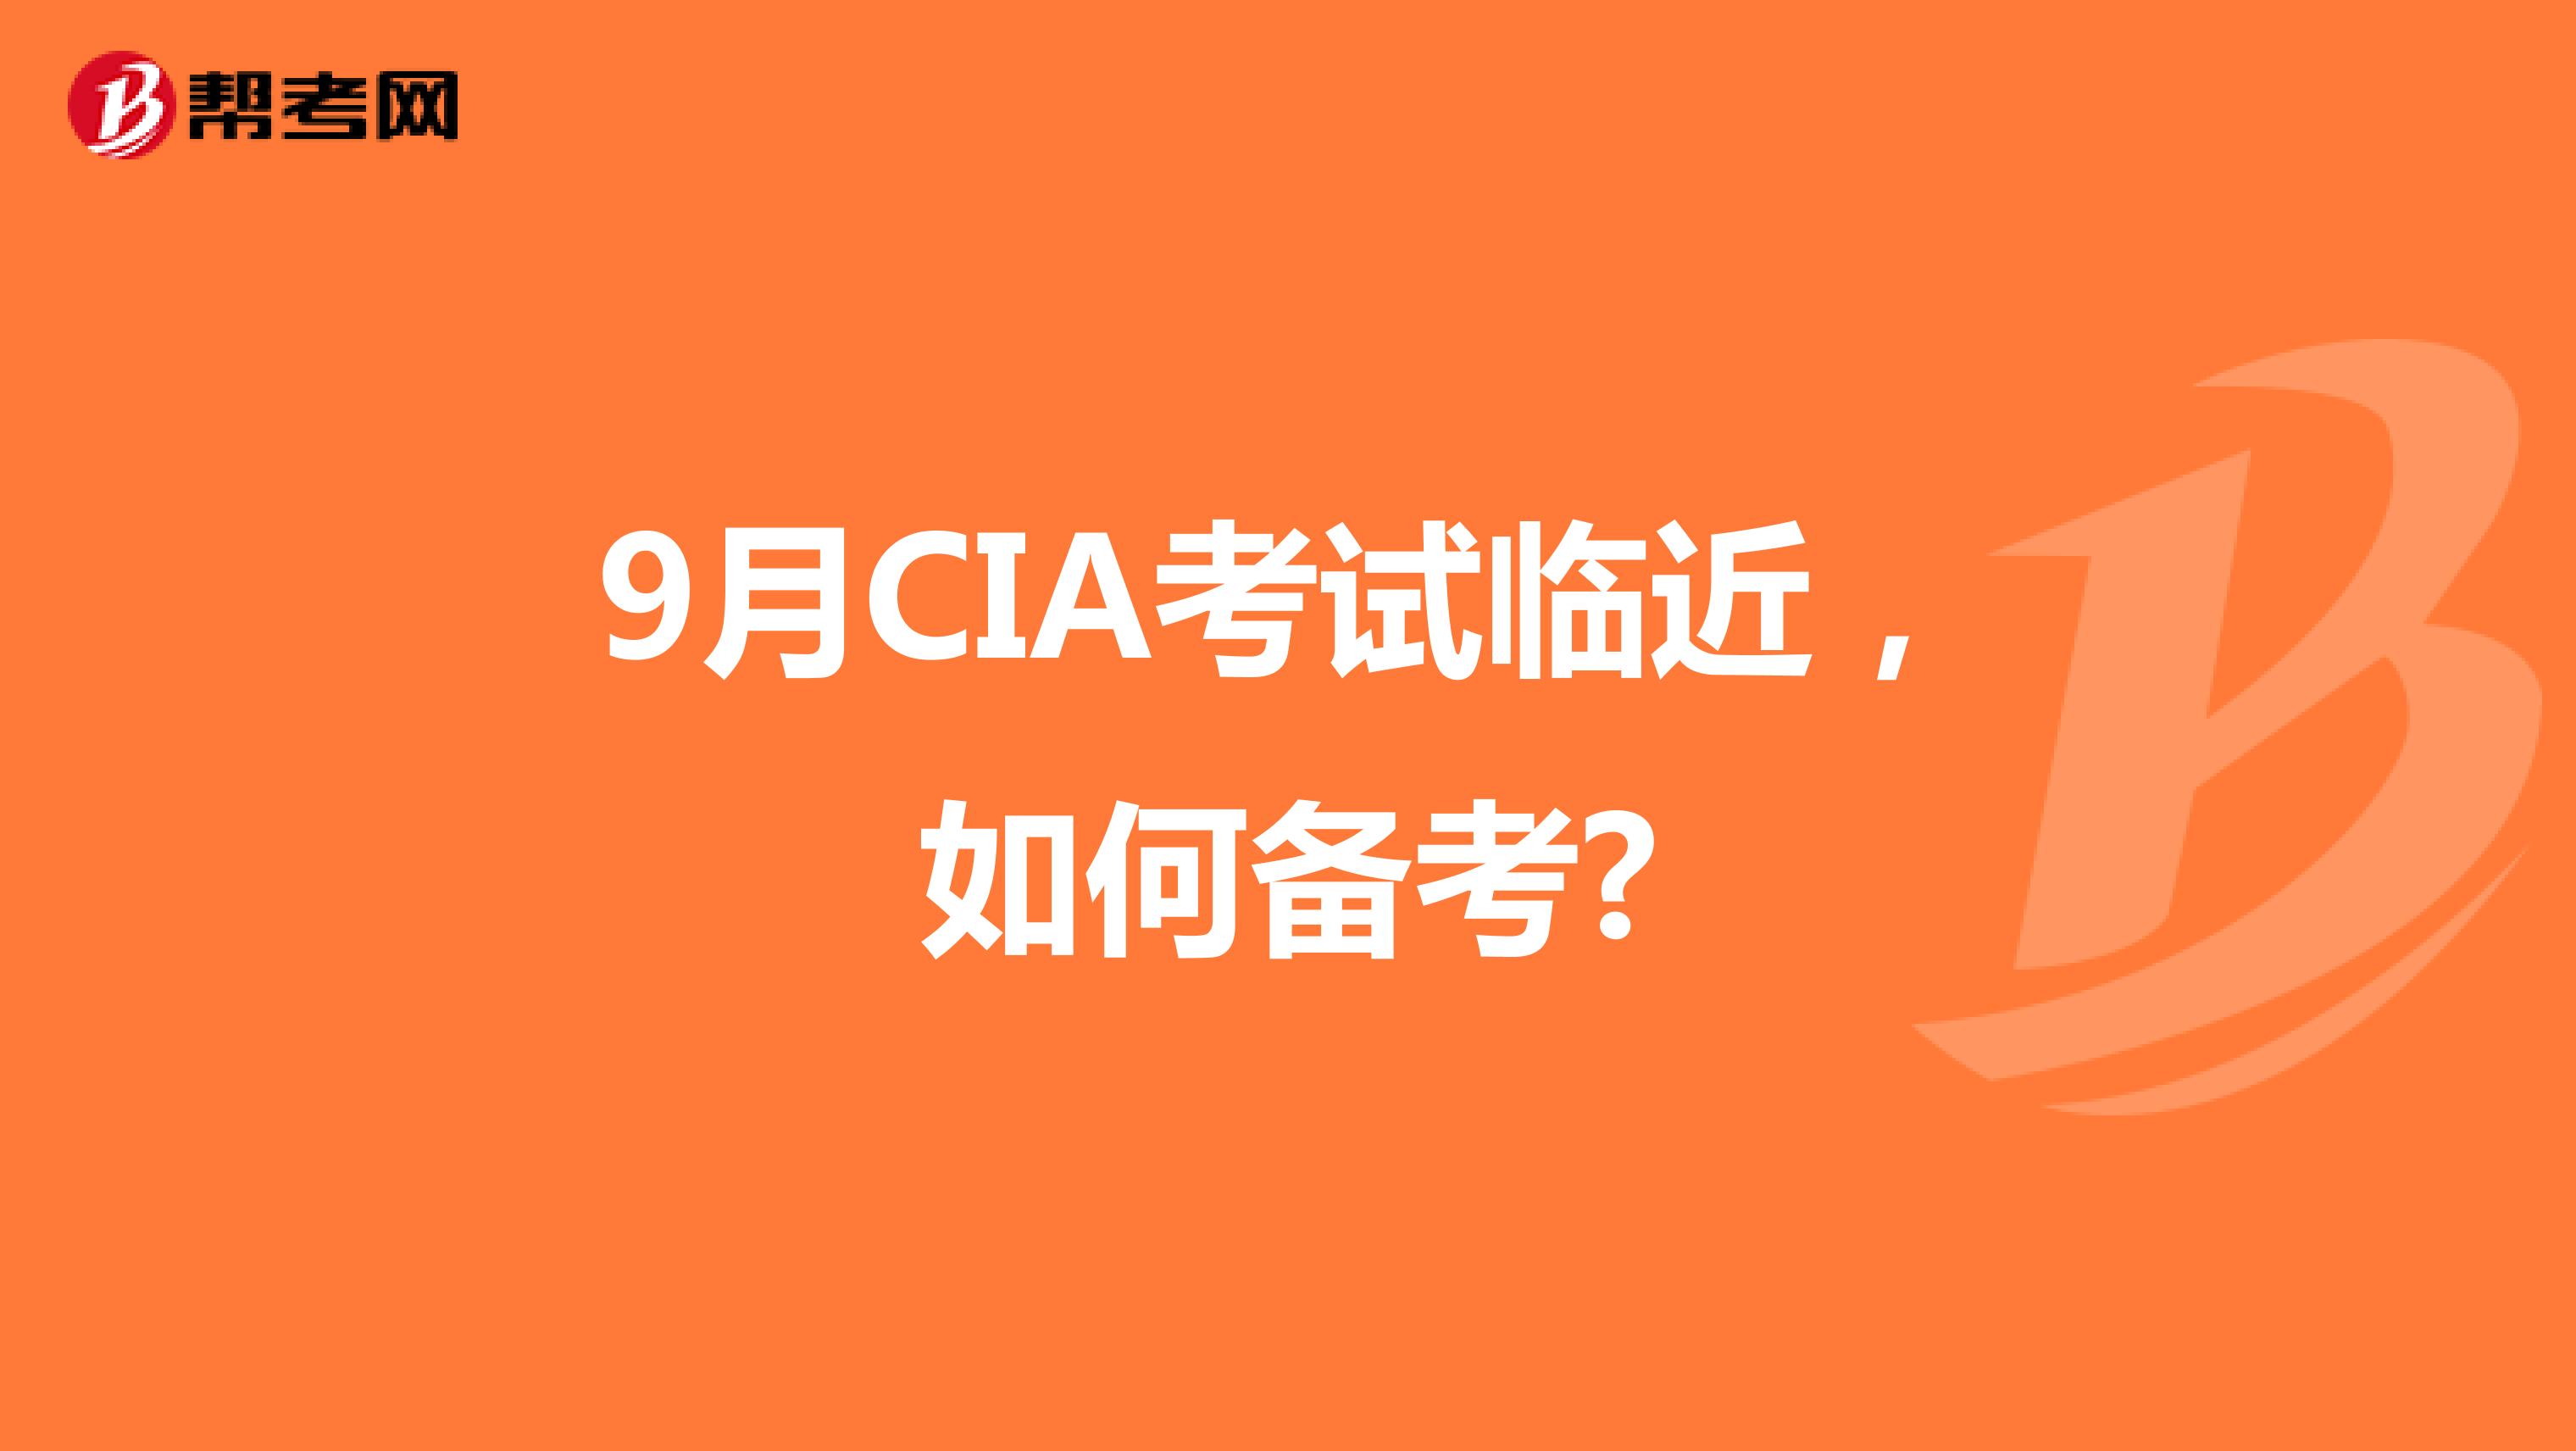 9月CIA考试临近，如何备考?